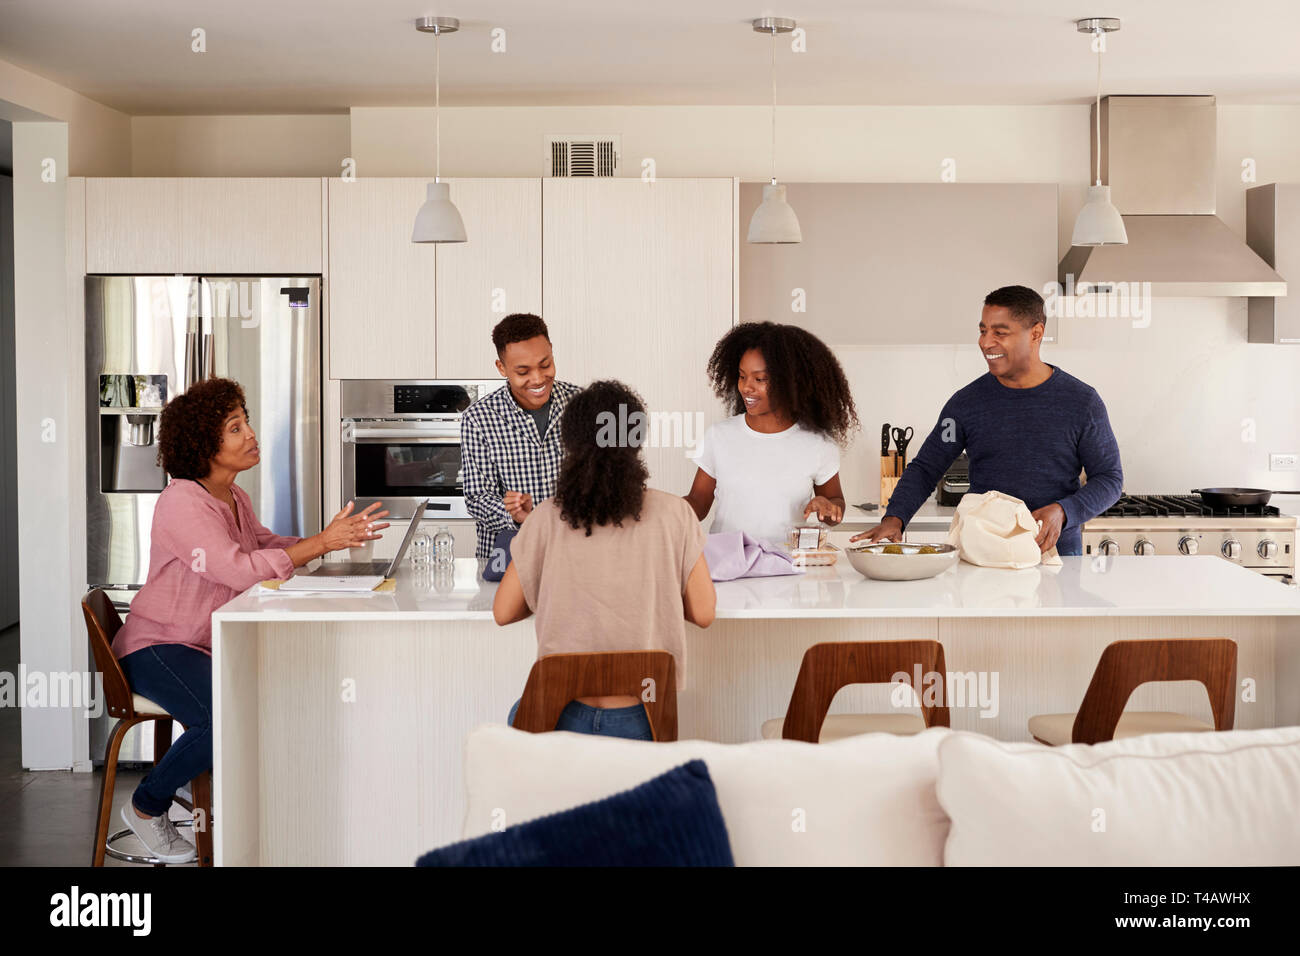 La famille noire dans leur cuisine de parler et de préparer vos repas en famille Banque D'Images